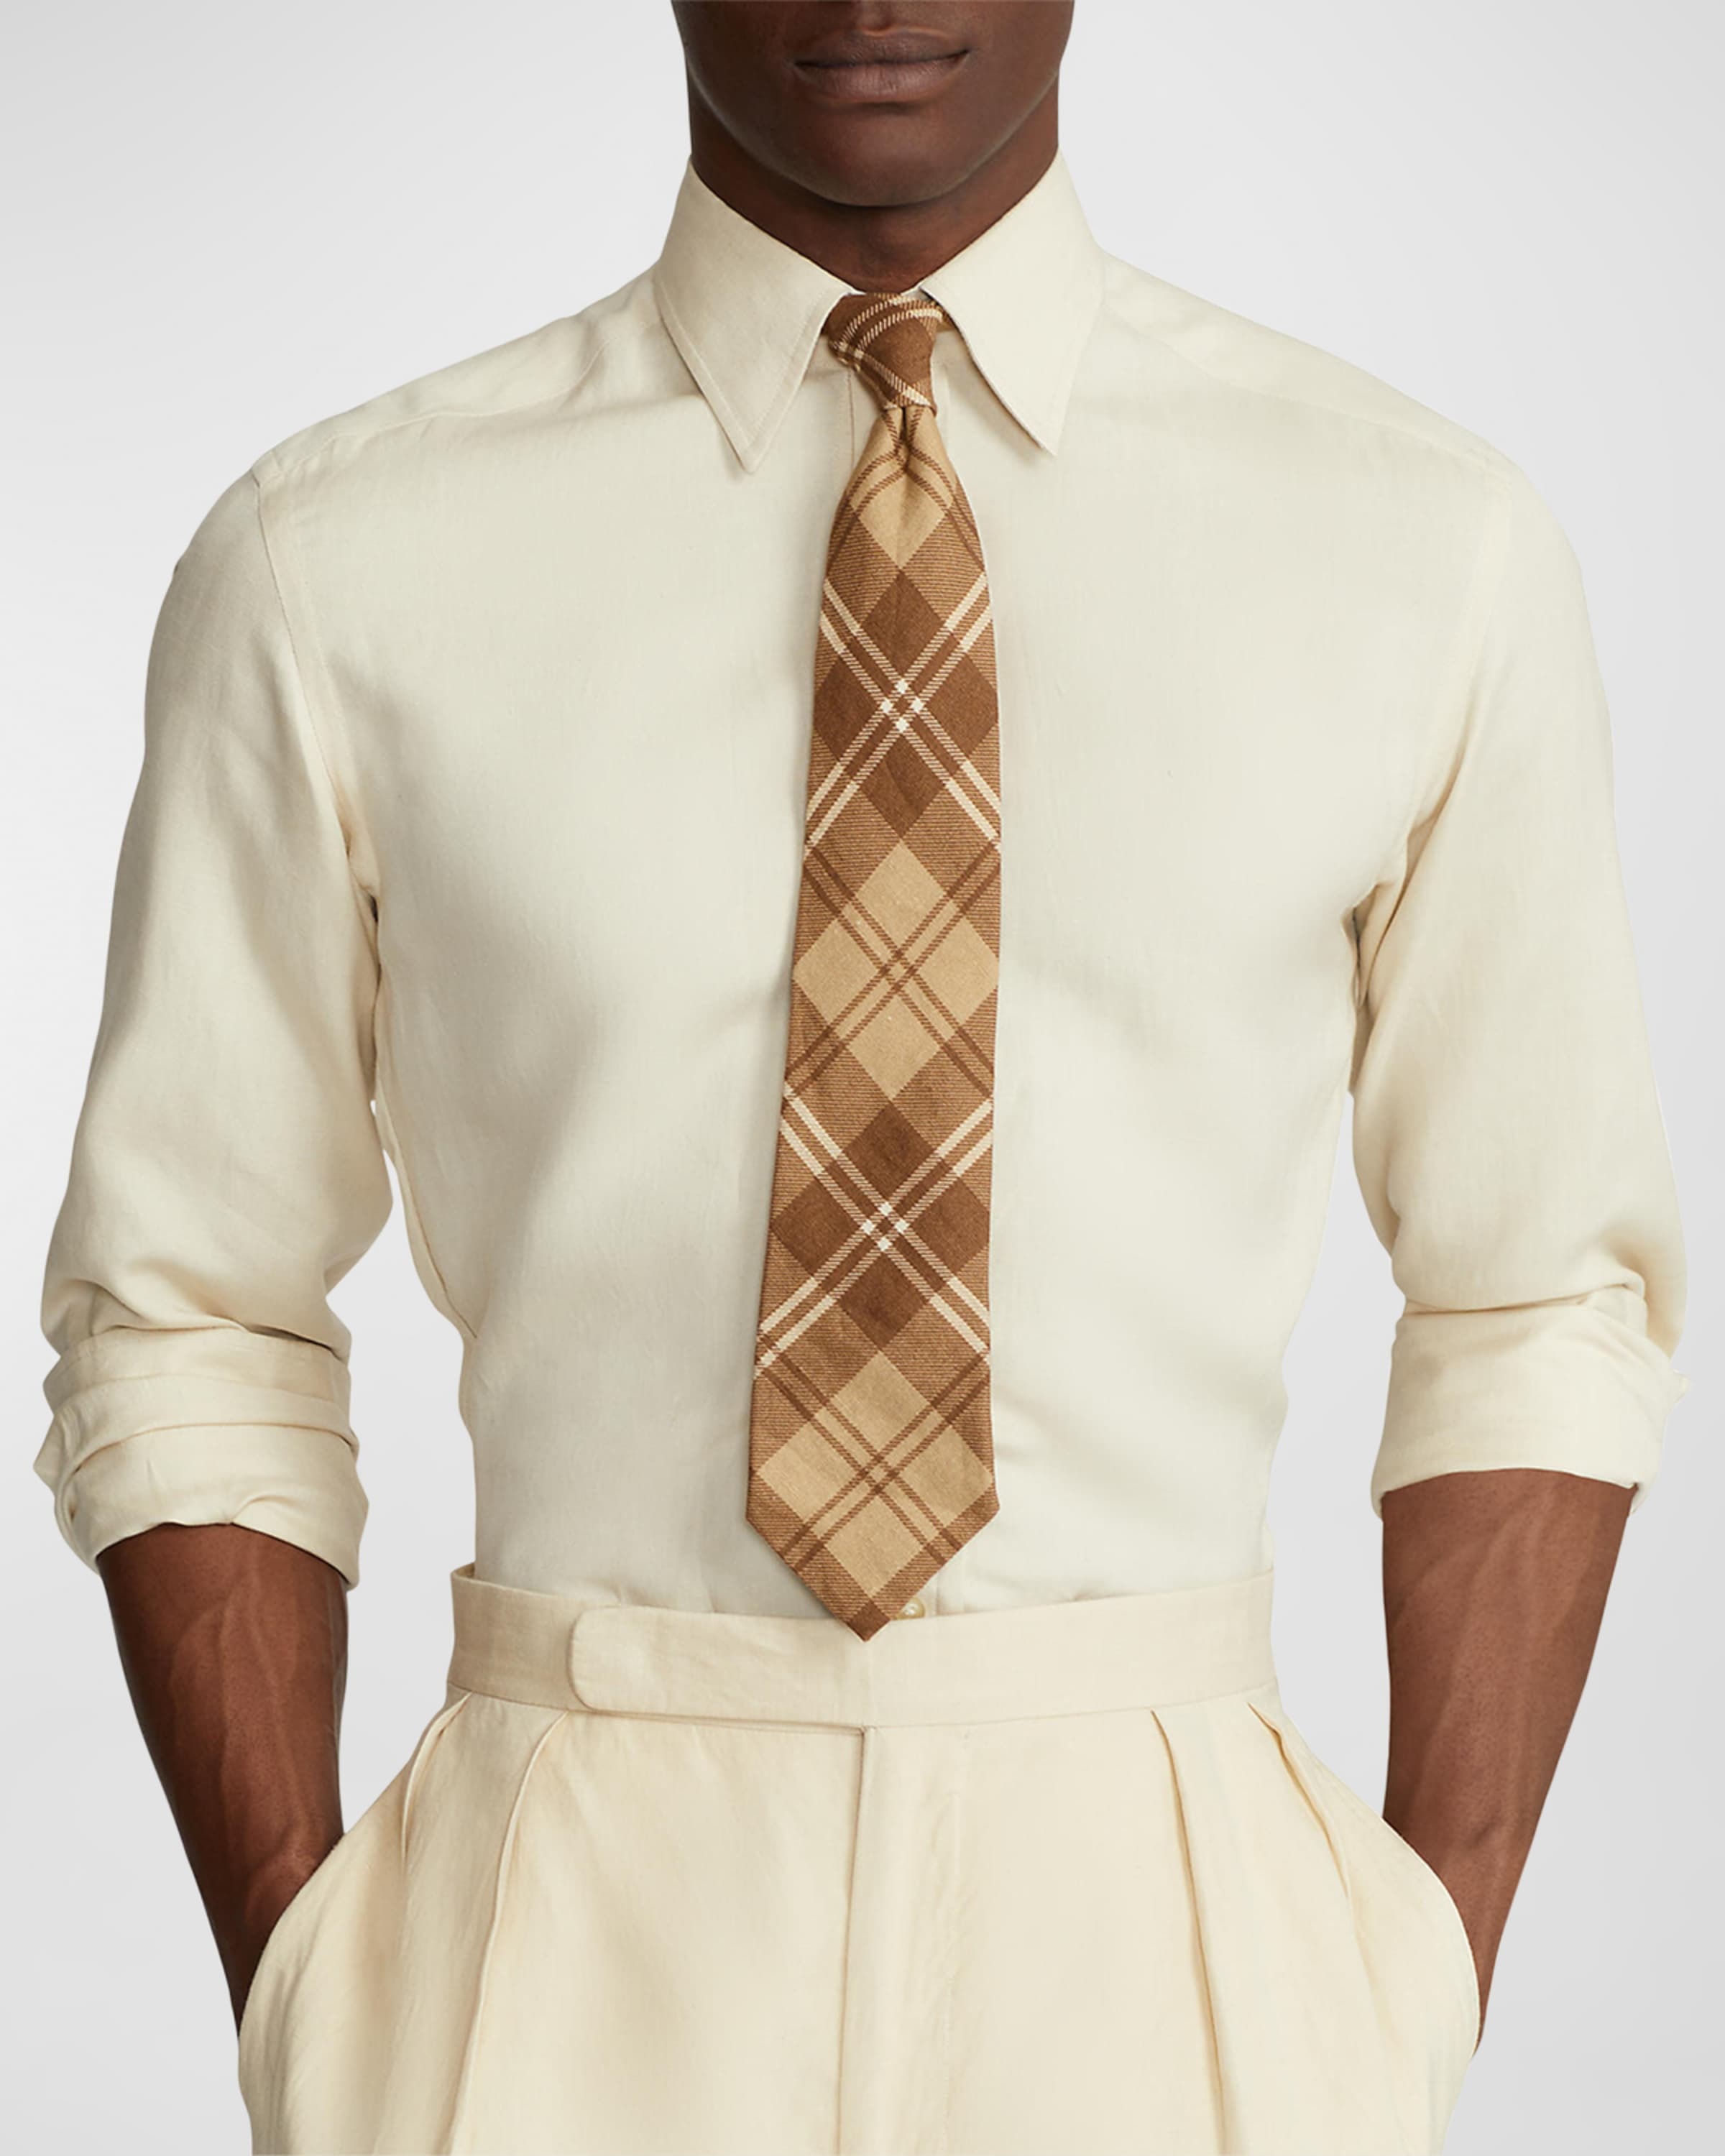 Men's Plaid-Print Linen Tie - 2